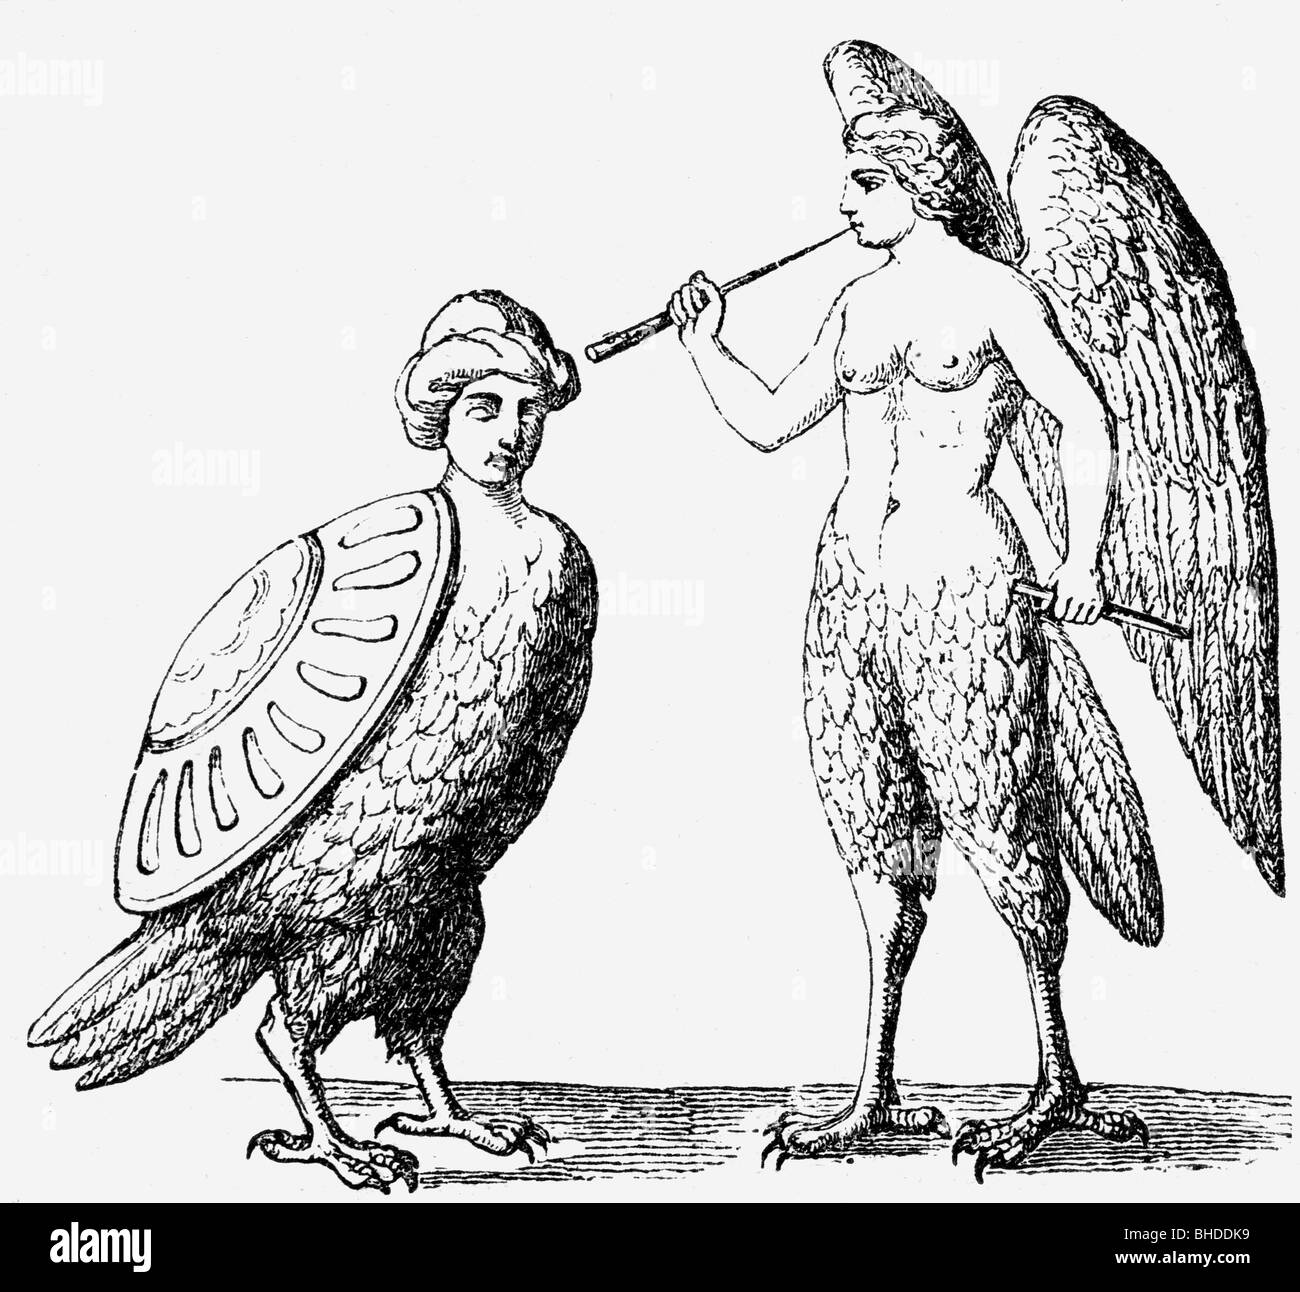 Amapolas, criaturas míticas griegas (media mujer, medio pájaro), grabado de madera, siglo 19, Foto de stock